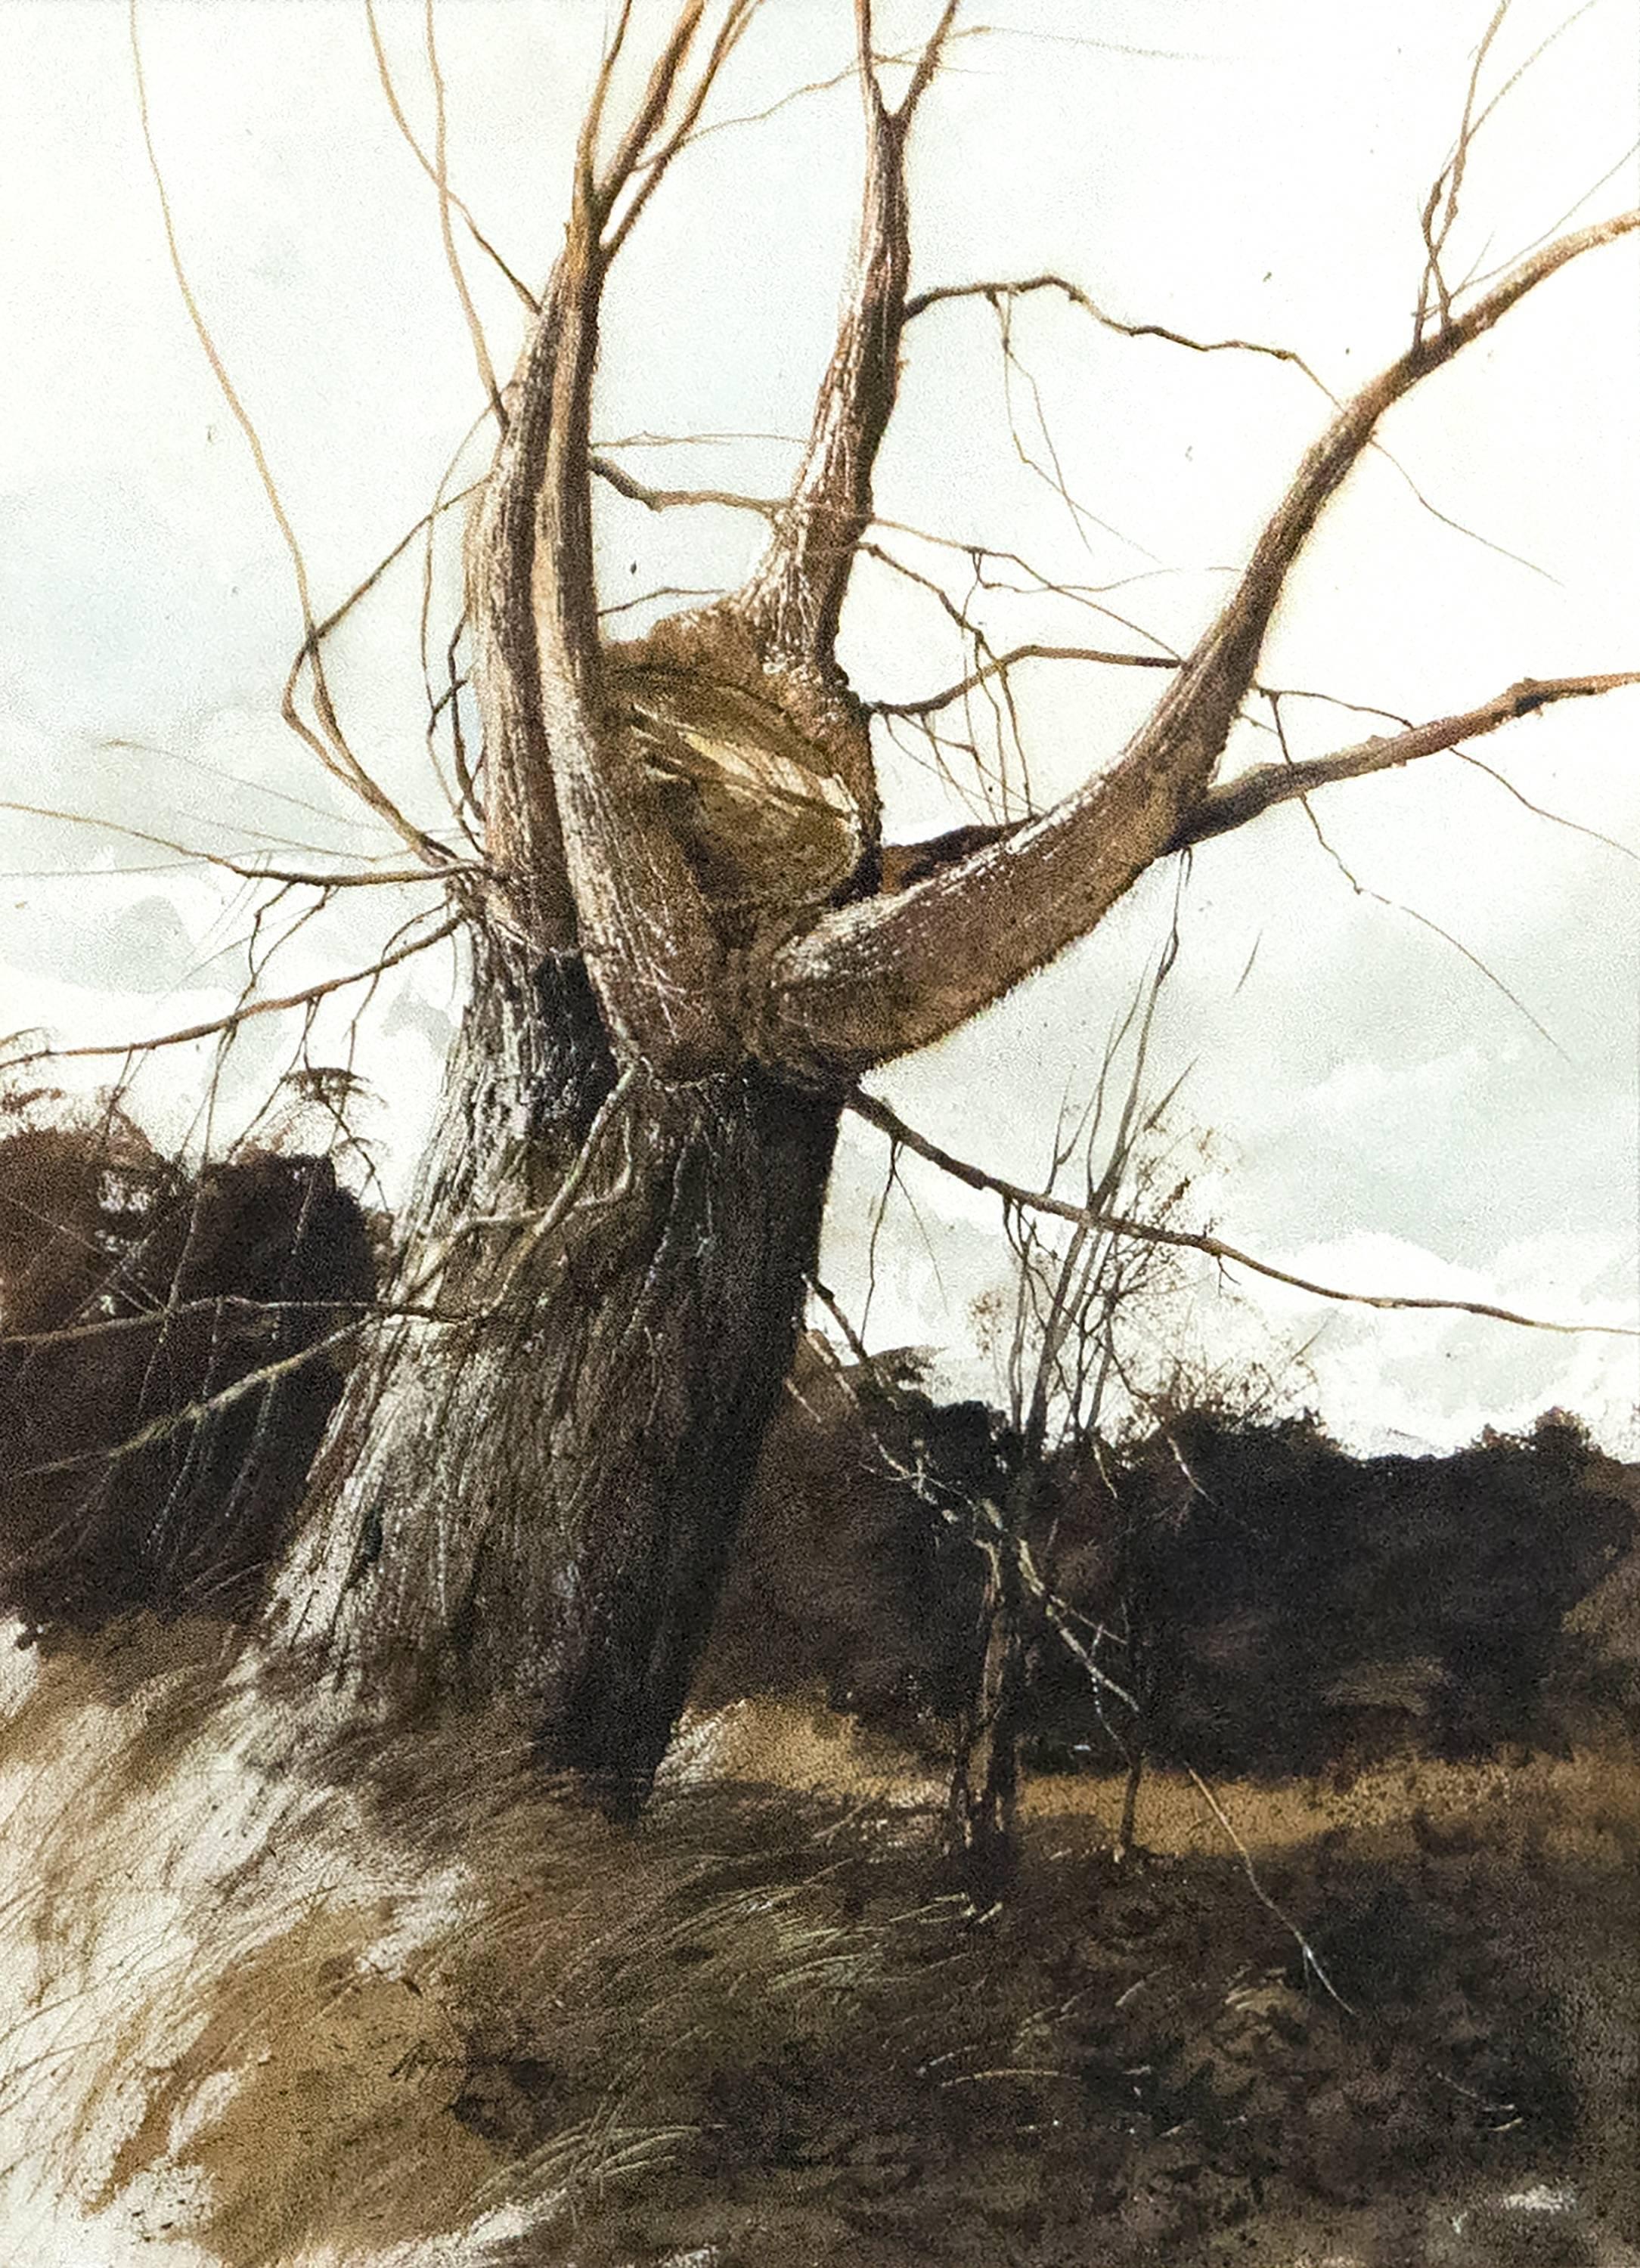 Landscape Art Gregory Sumida - Nouvelles branches en forme de tempête surplombant